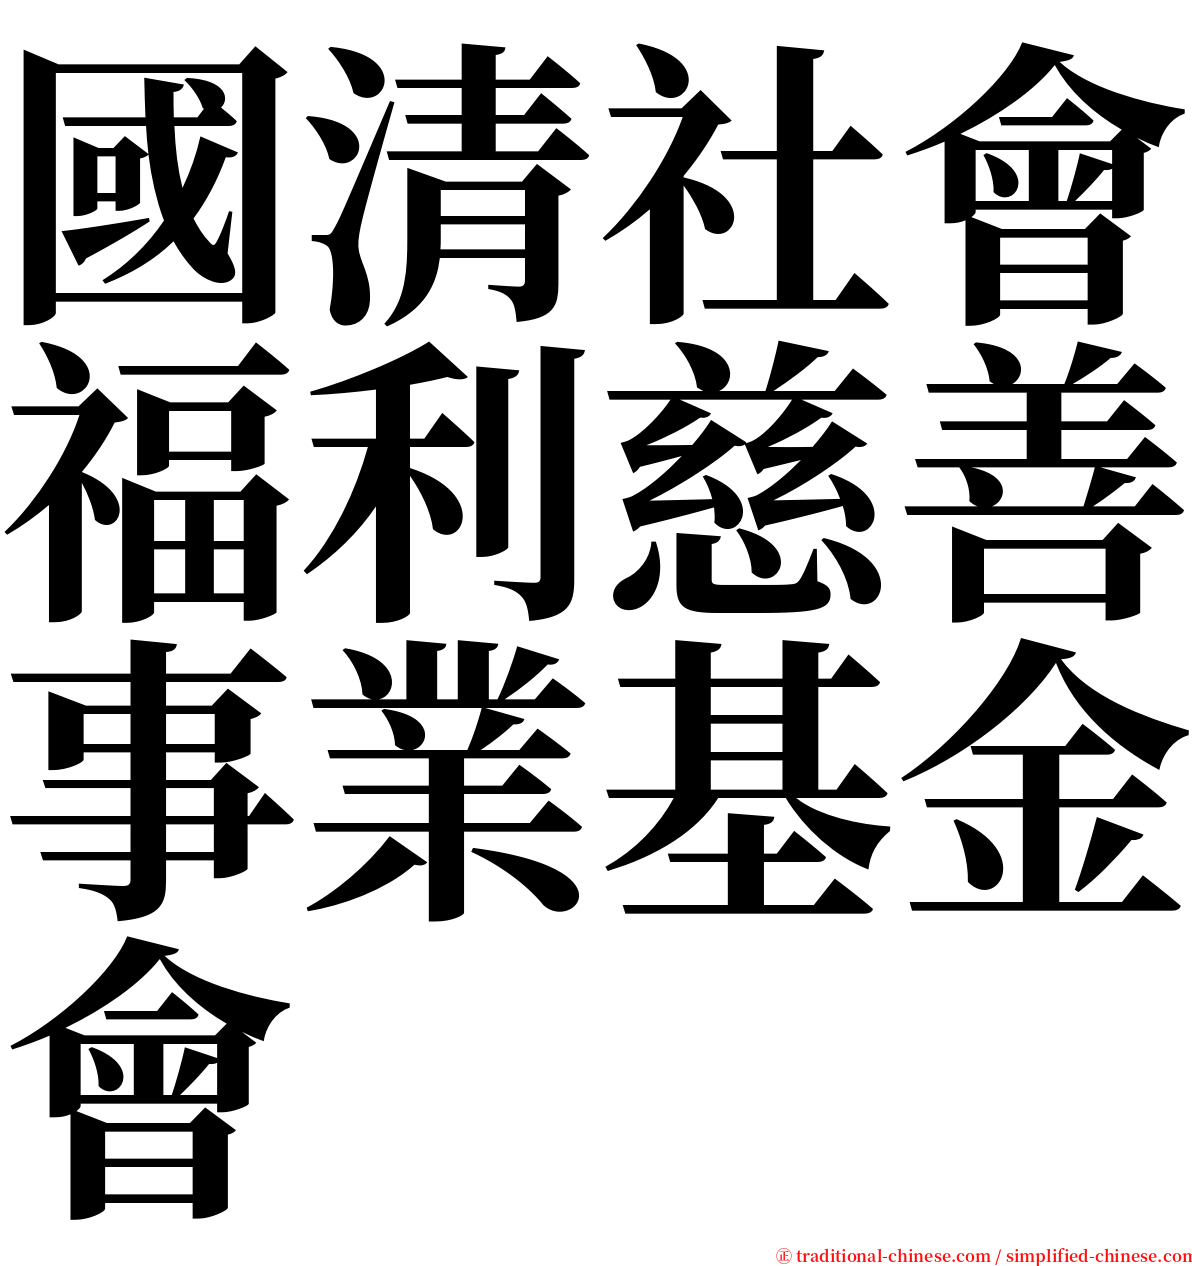 國清社會福利慈善事業基金會 serif font